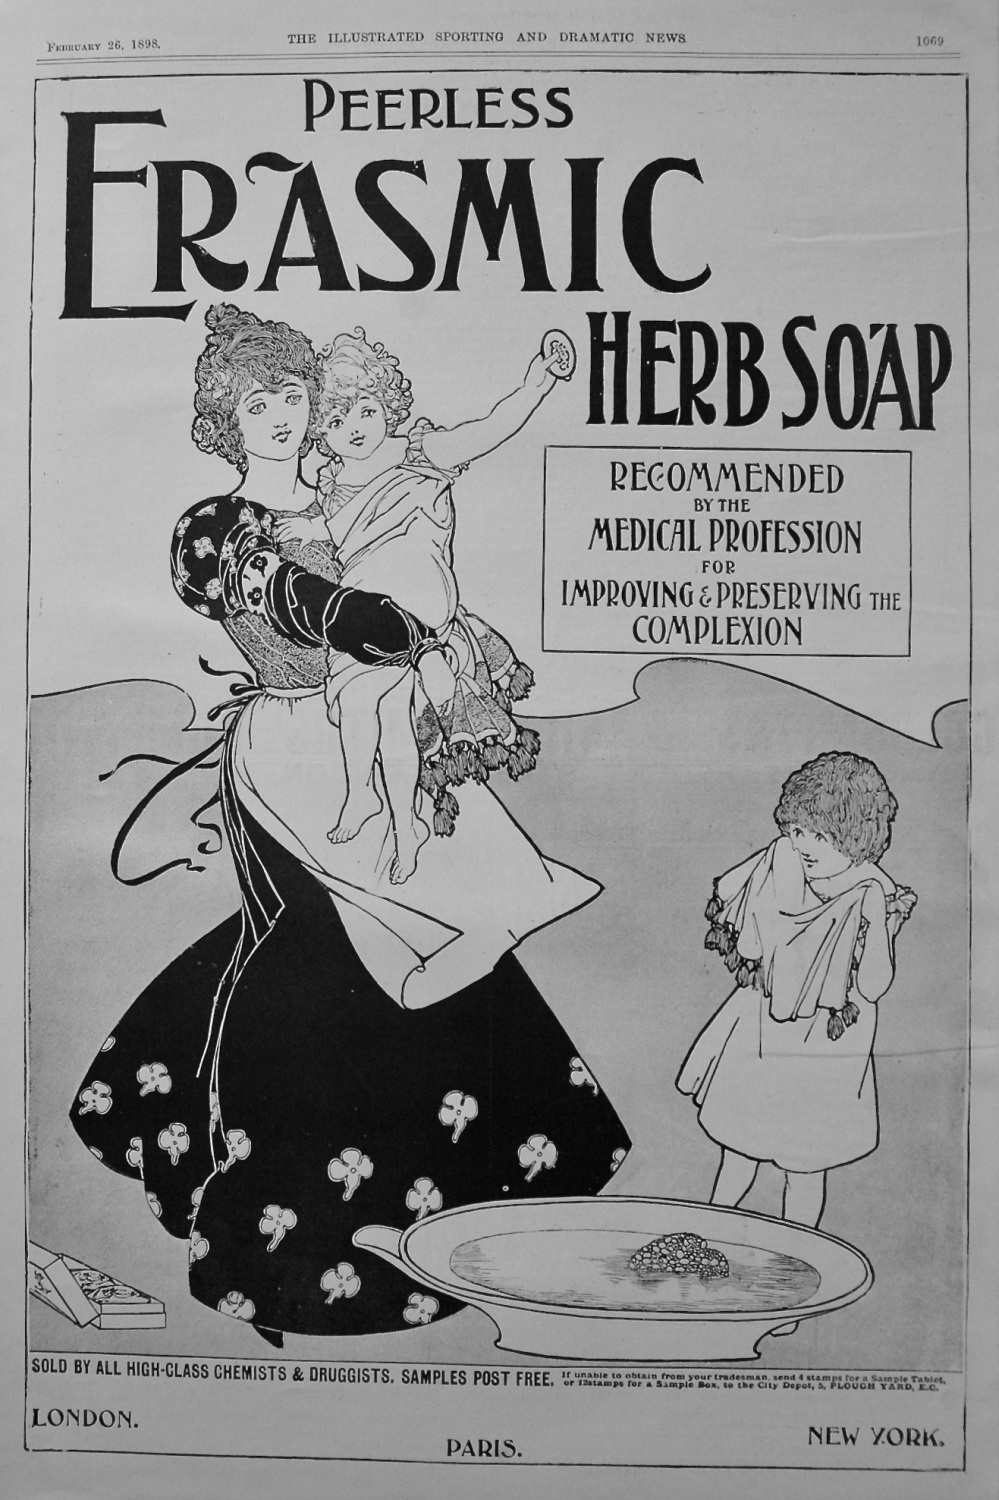 Peerless Erasmic Herb Soap. 1898